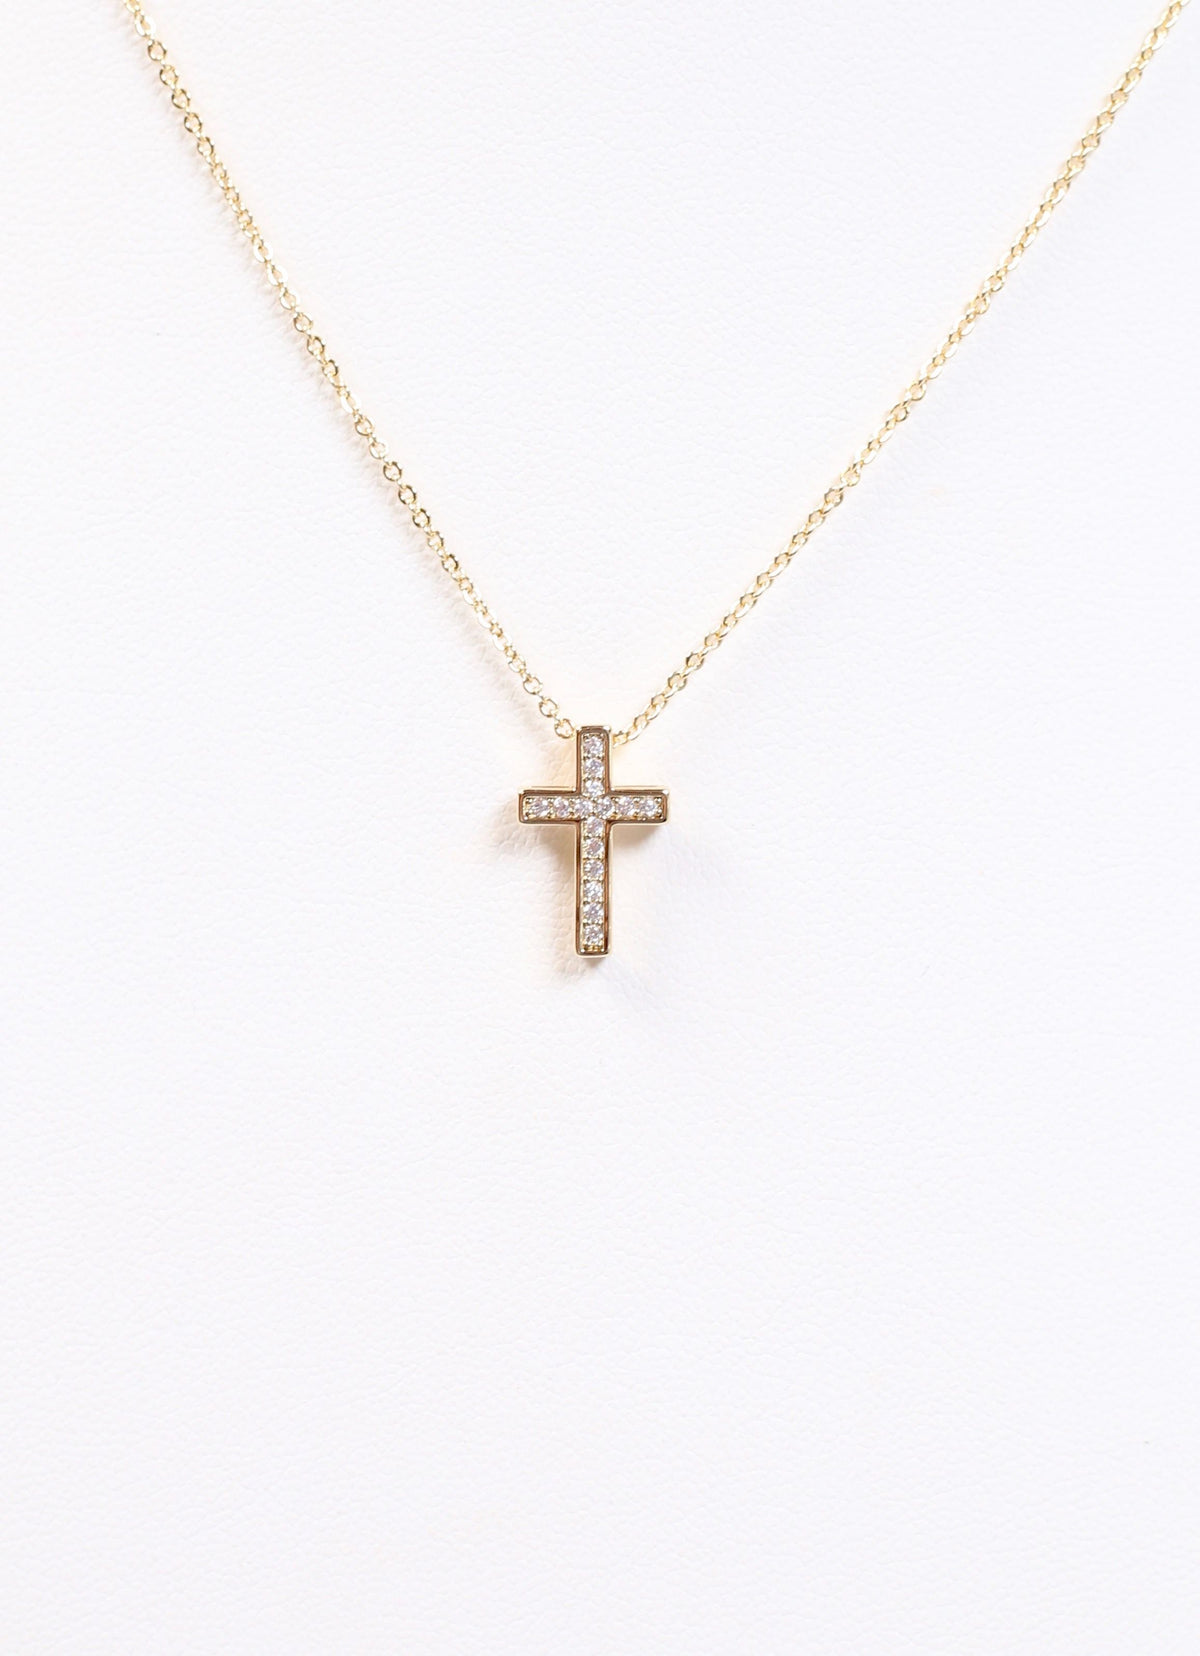 Saint CZ Cross Necklace GOLD